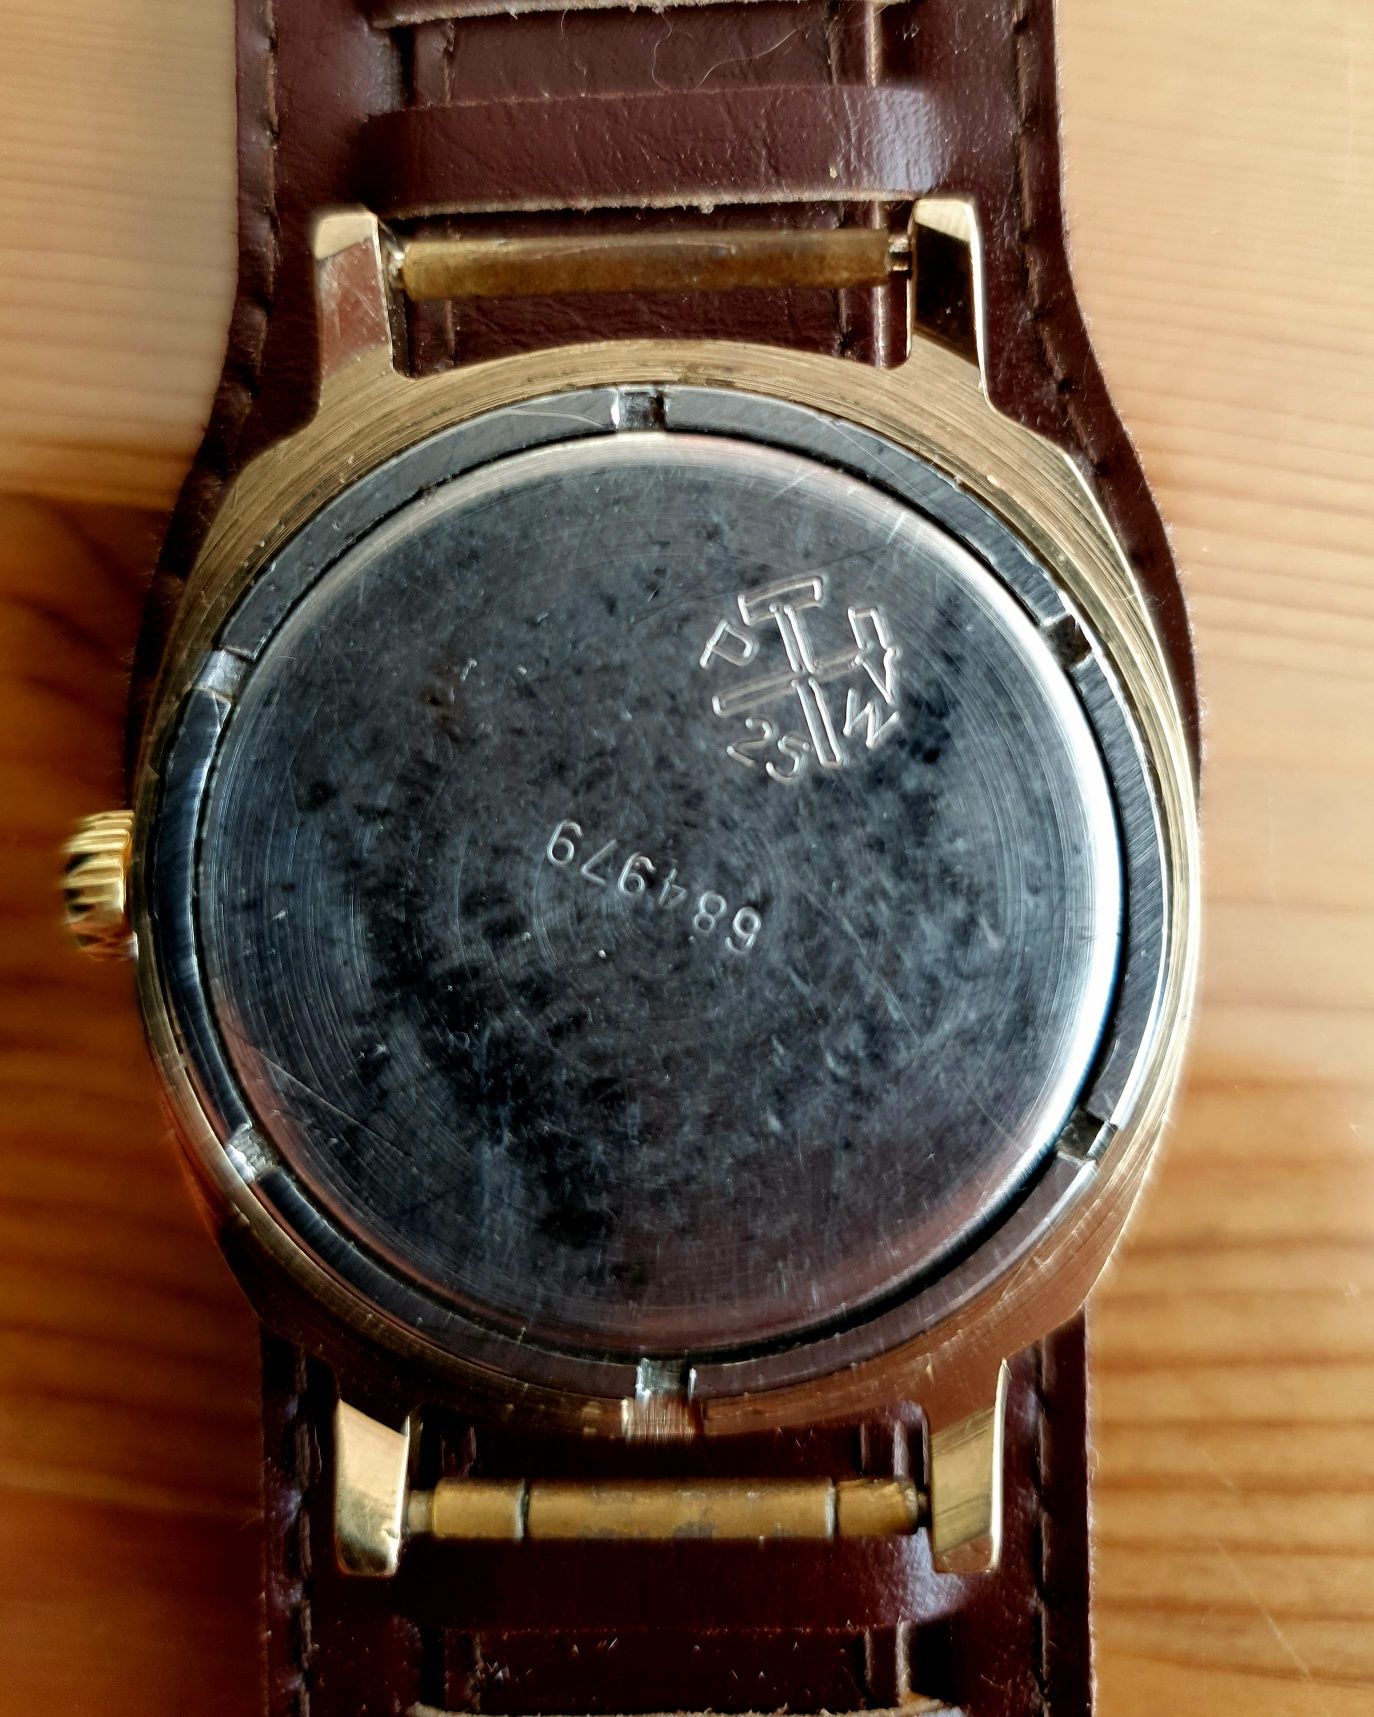 Zegarek Slava 21jewels data USSR brązowo-złoty